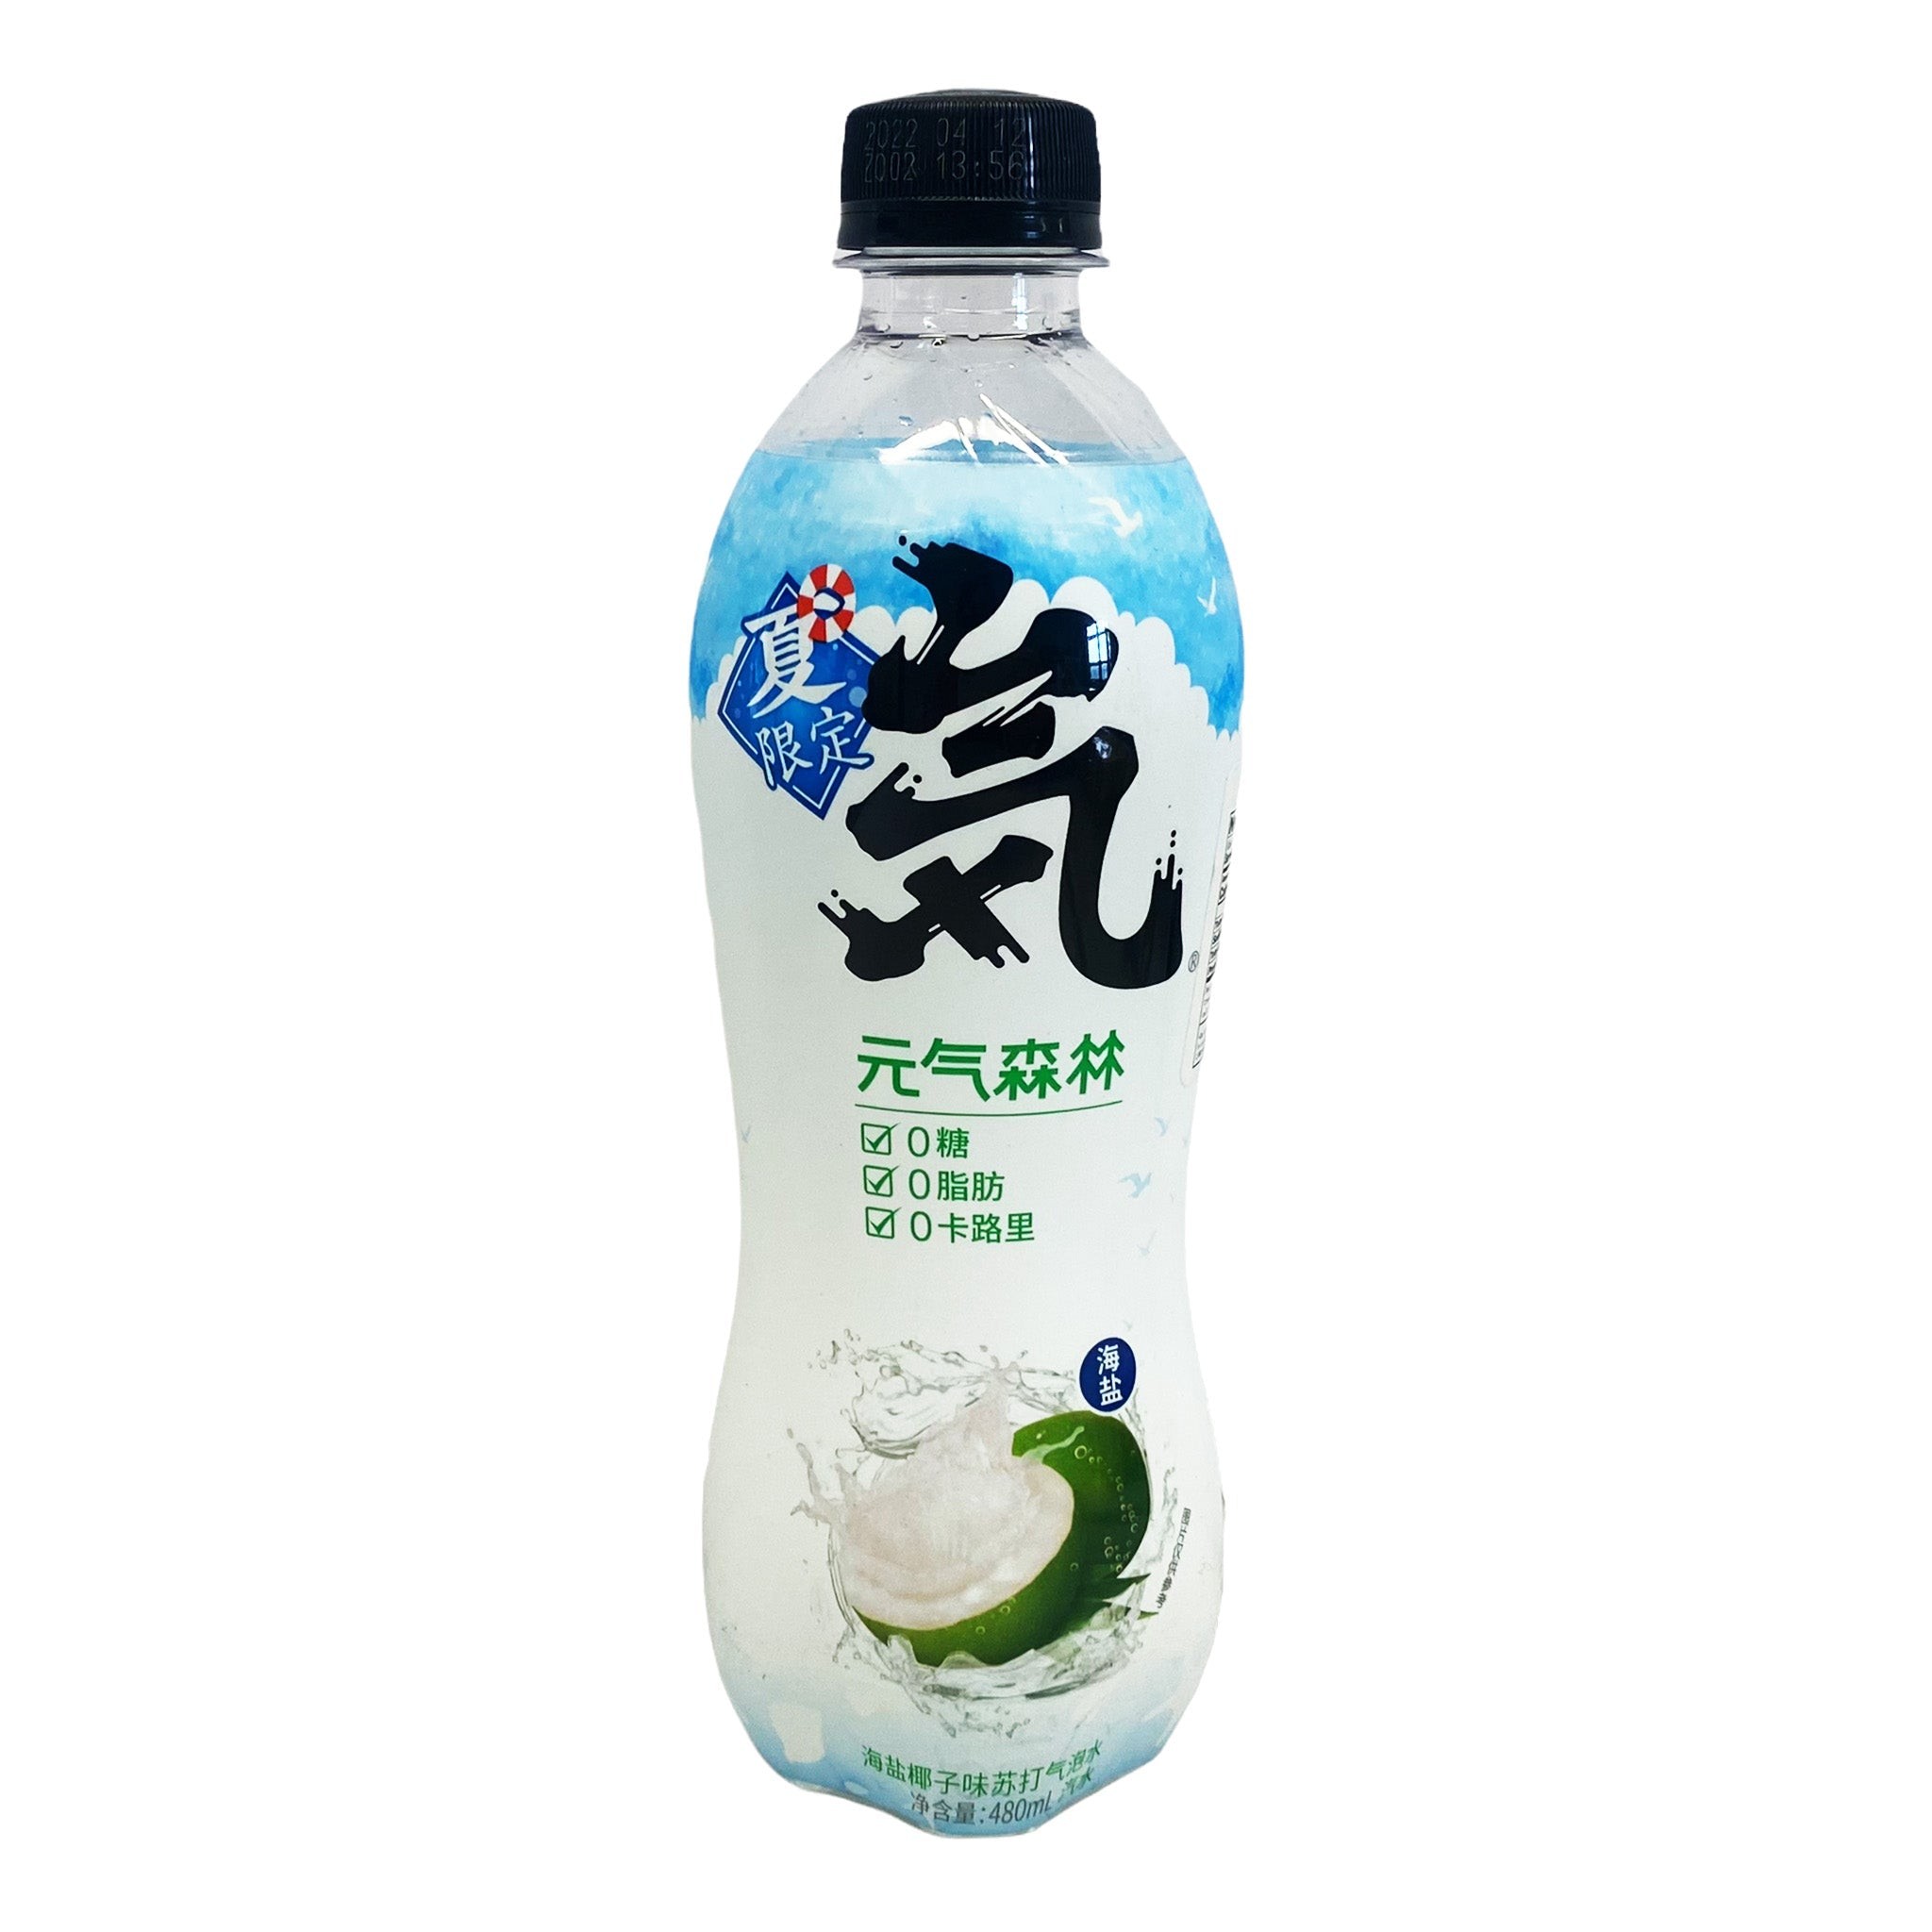 yqsl-coconut-flavor-soda-water